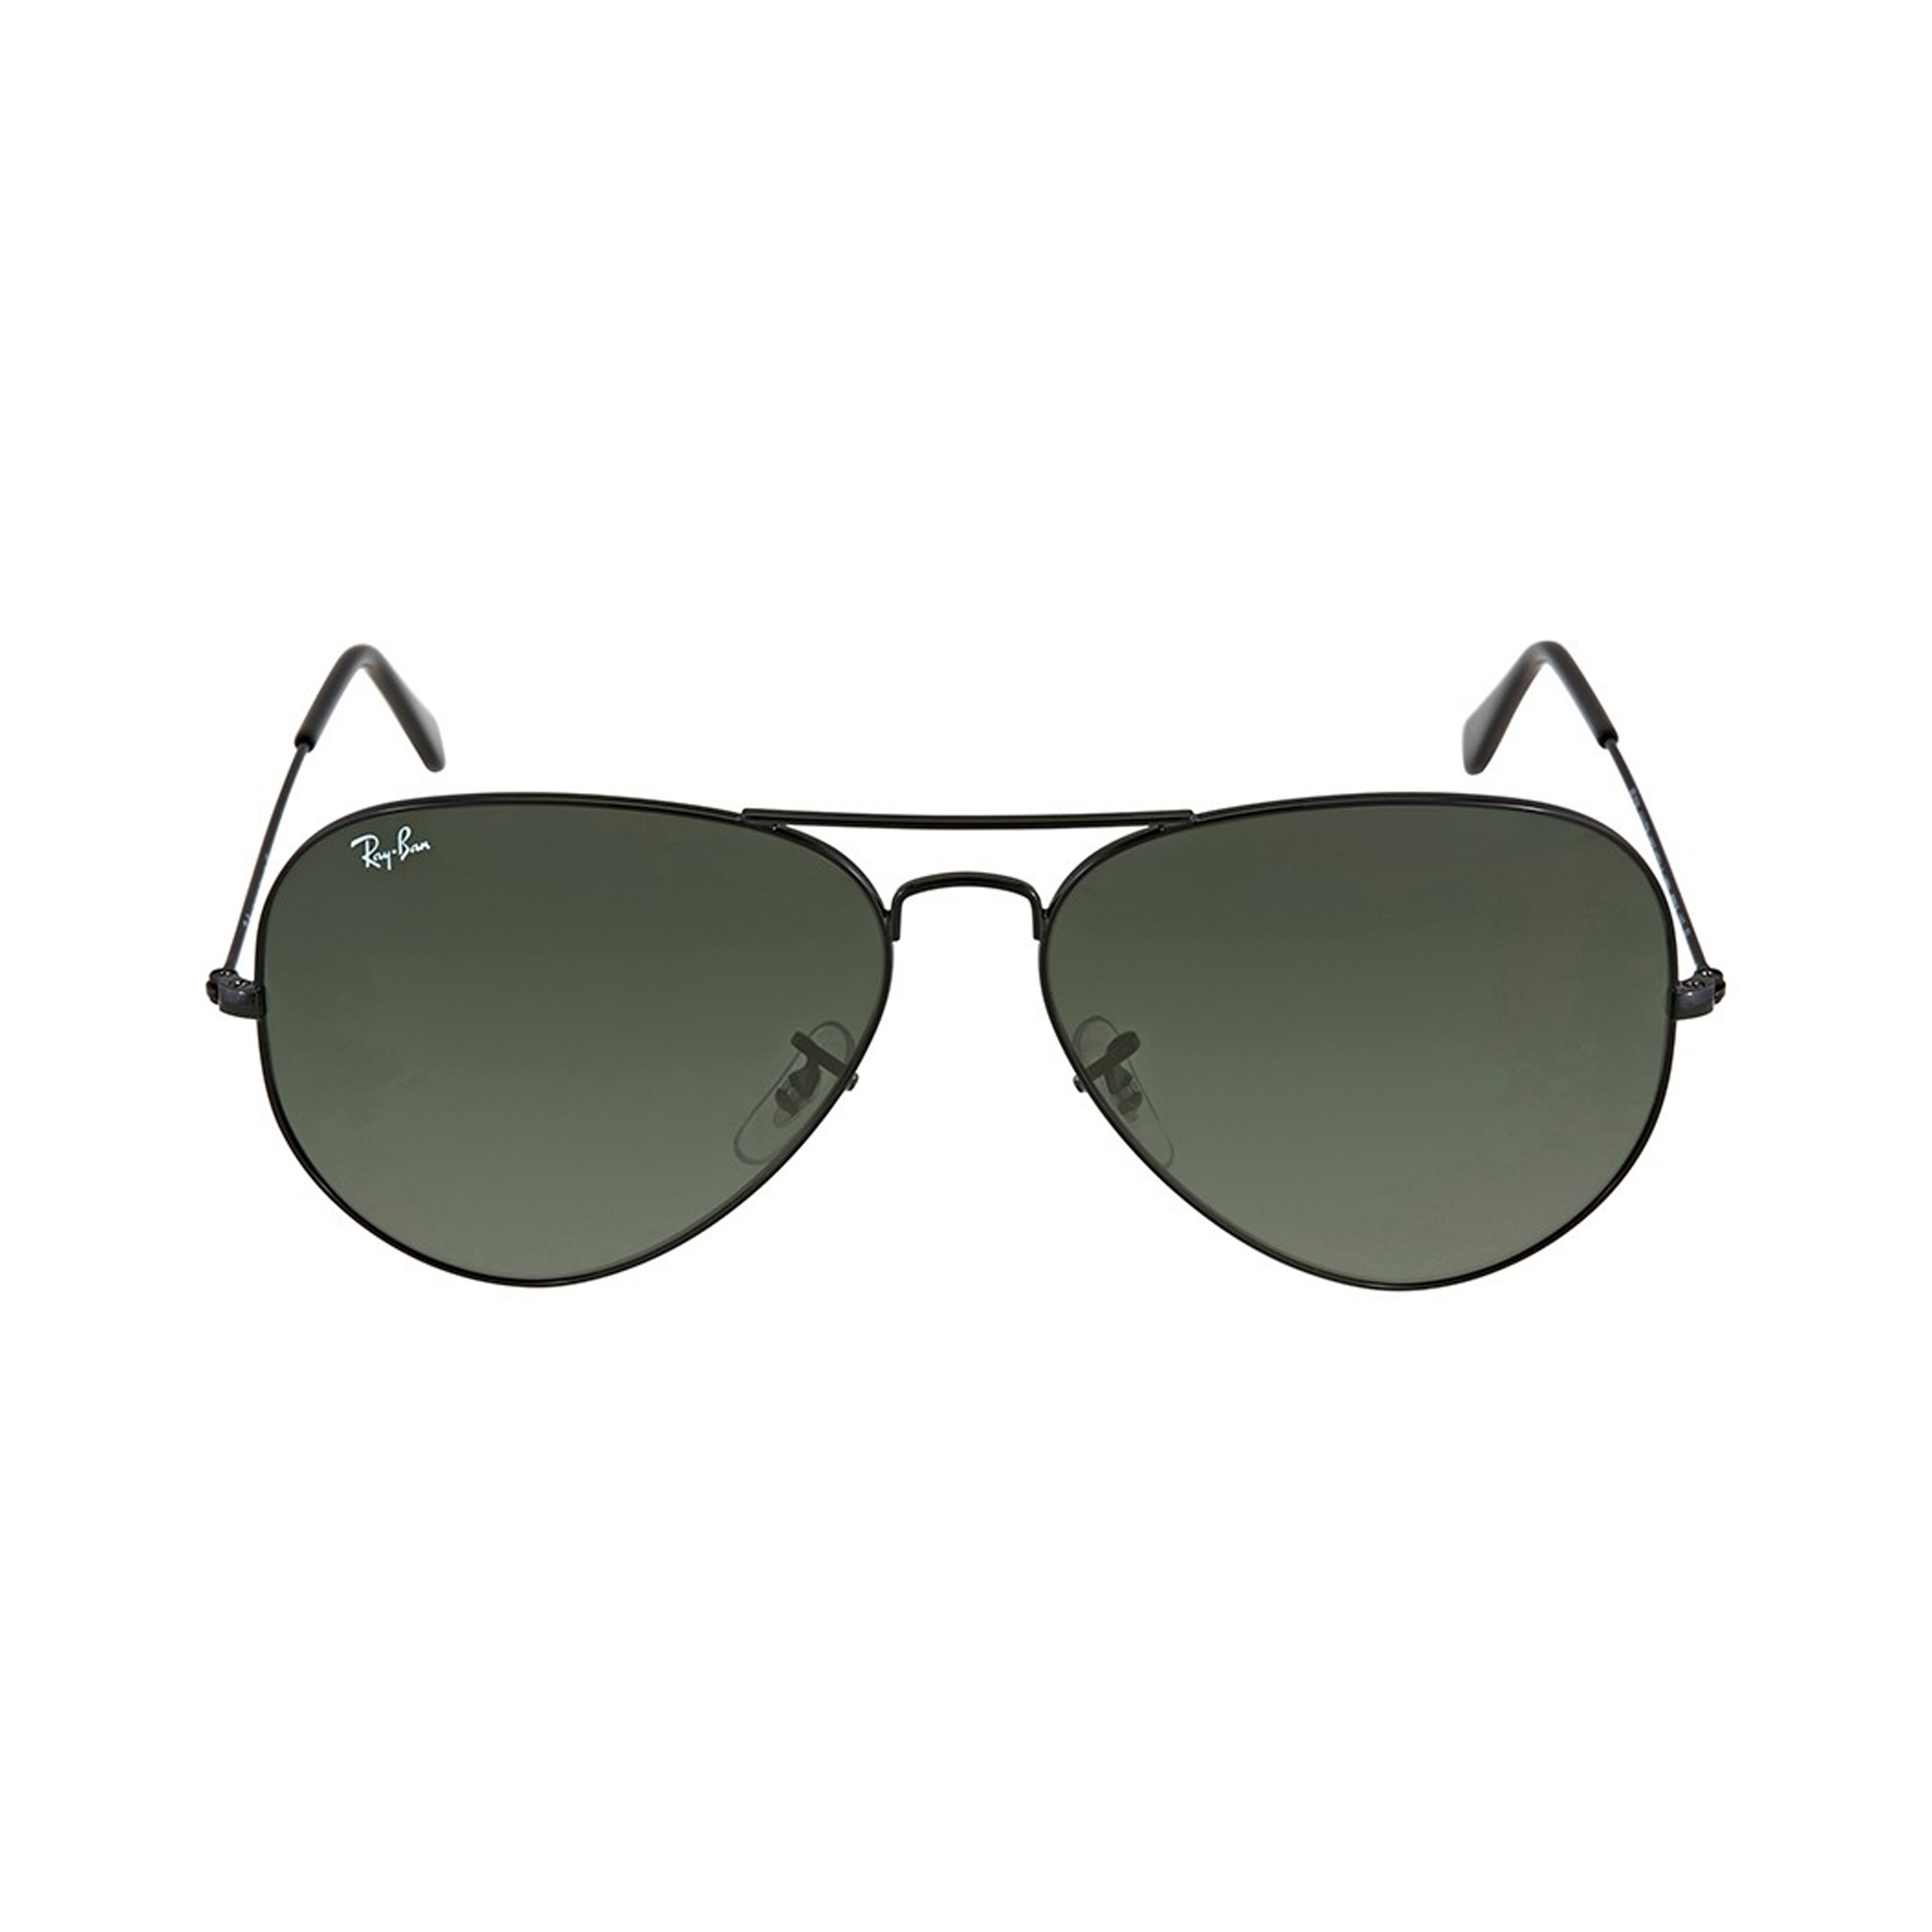 نکته خرید - قیمت روز عینک آفتابی ری بن مدل 3026-l2821-62 خرید